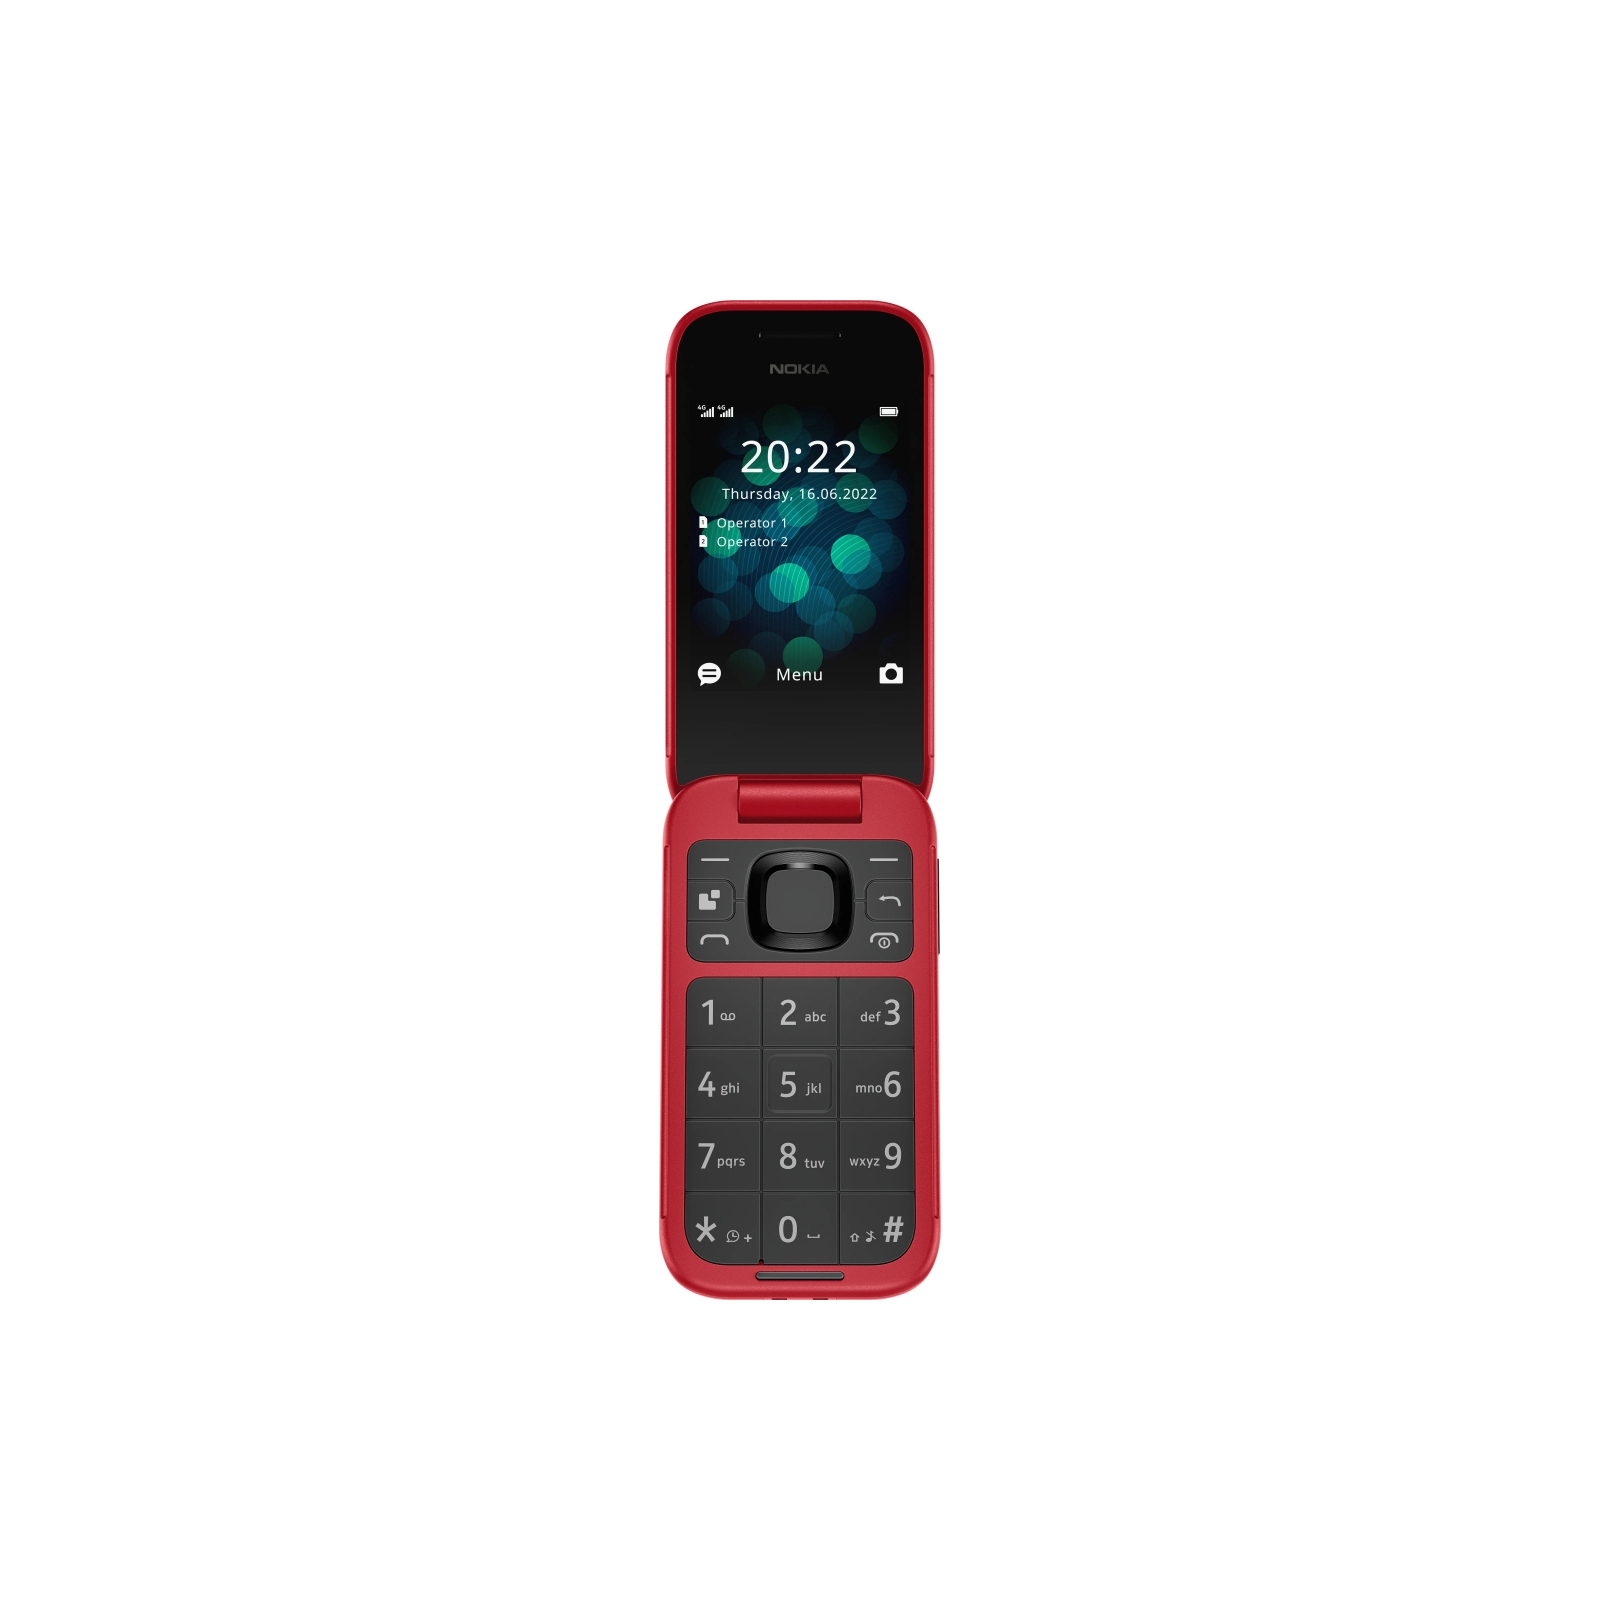 Мобільний телефон Nokia 2660 Flip Green зображення 3